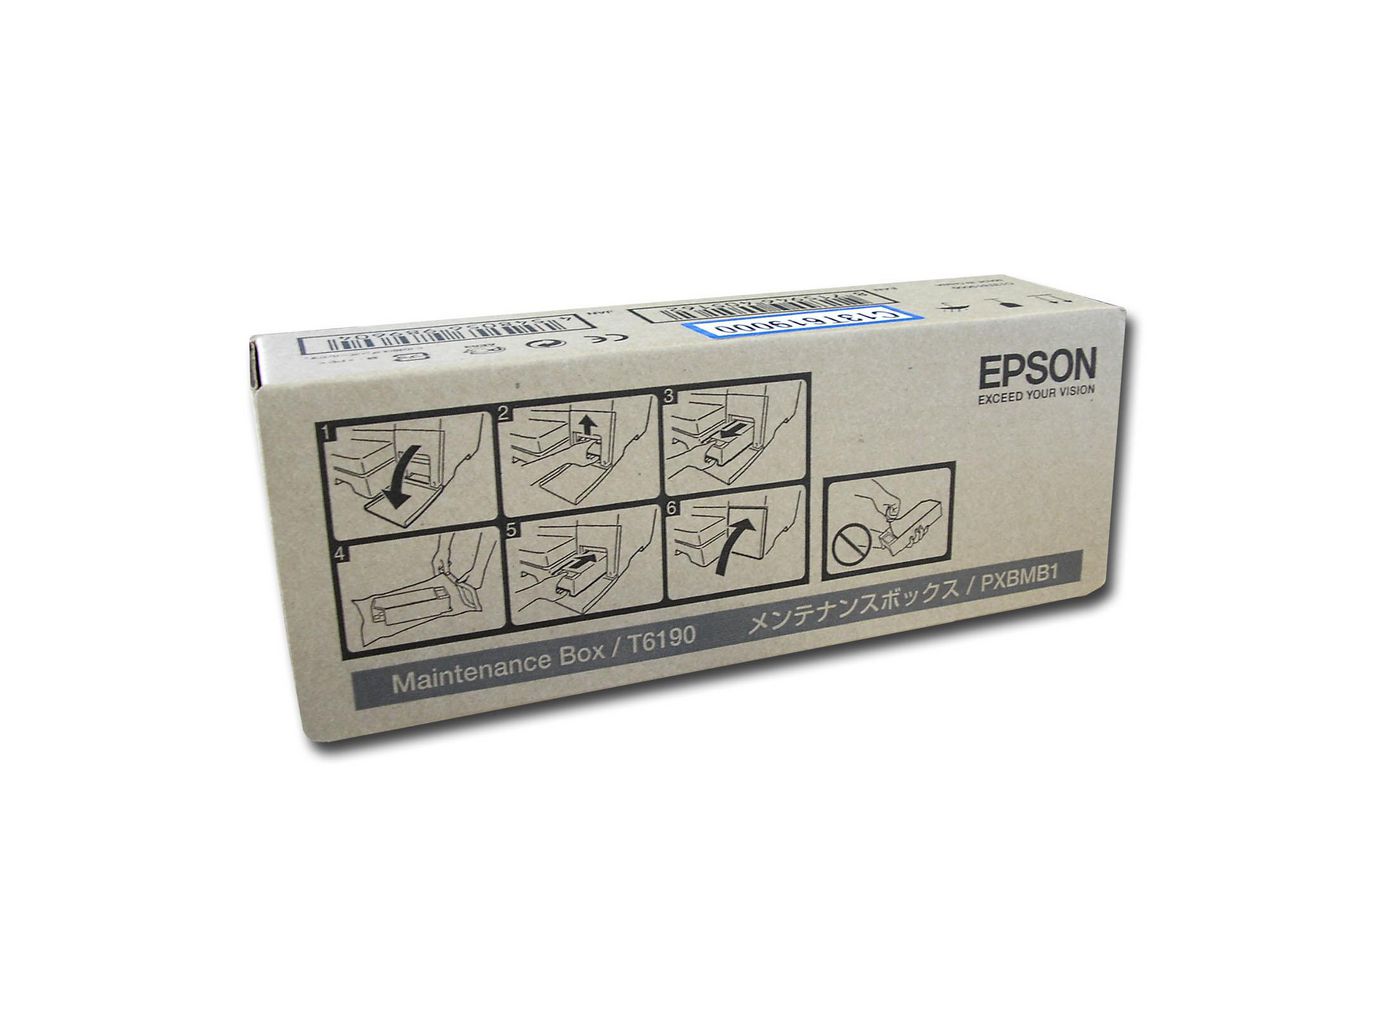 Epson C13T619000 Maintenance Box for B300B500 